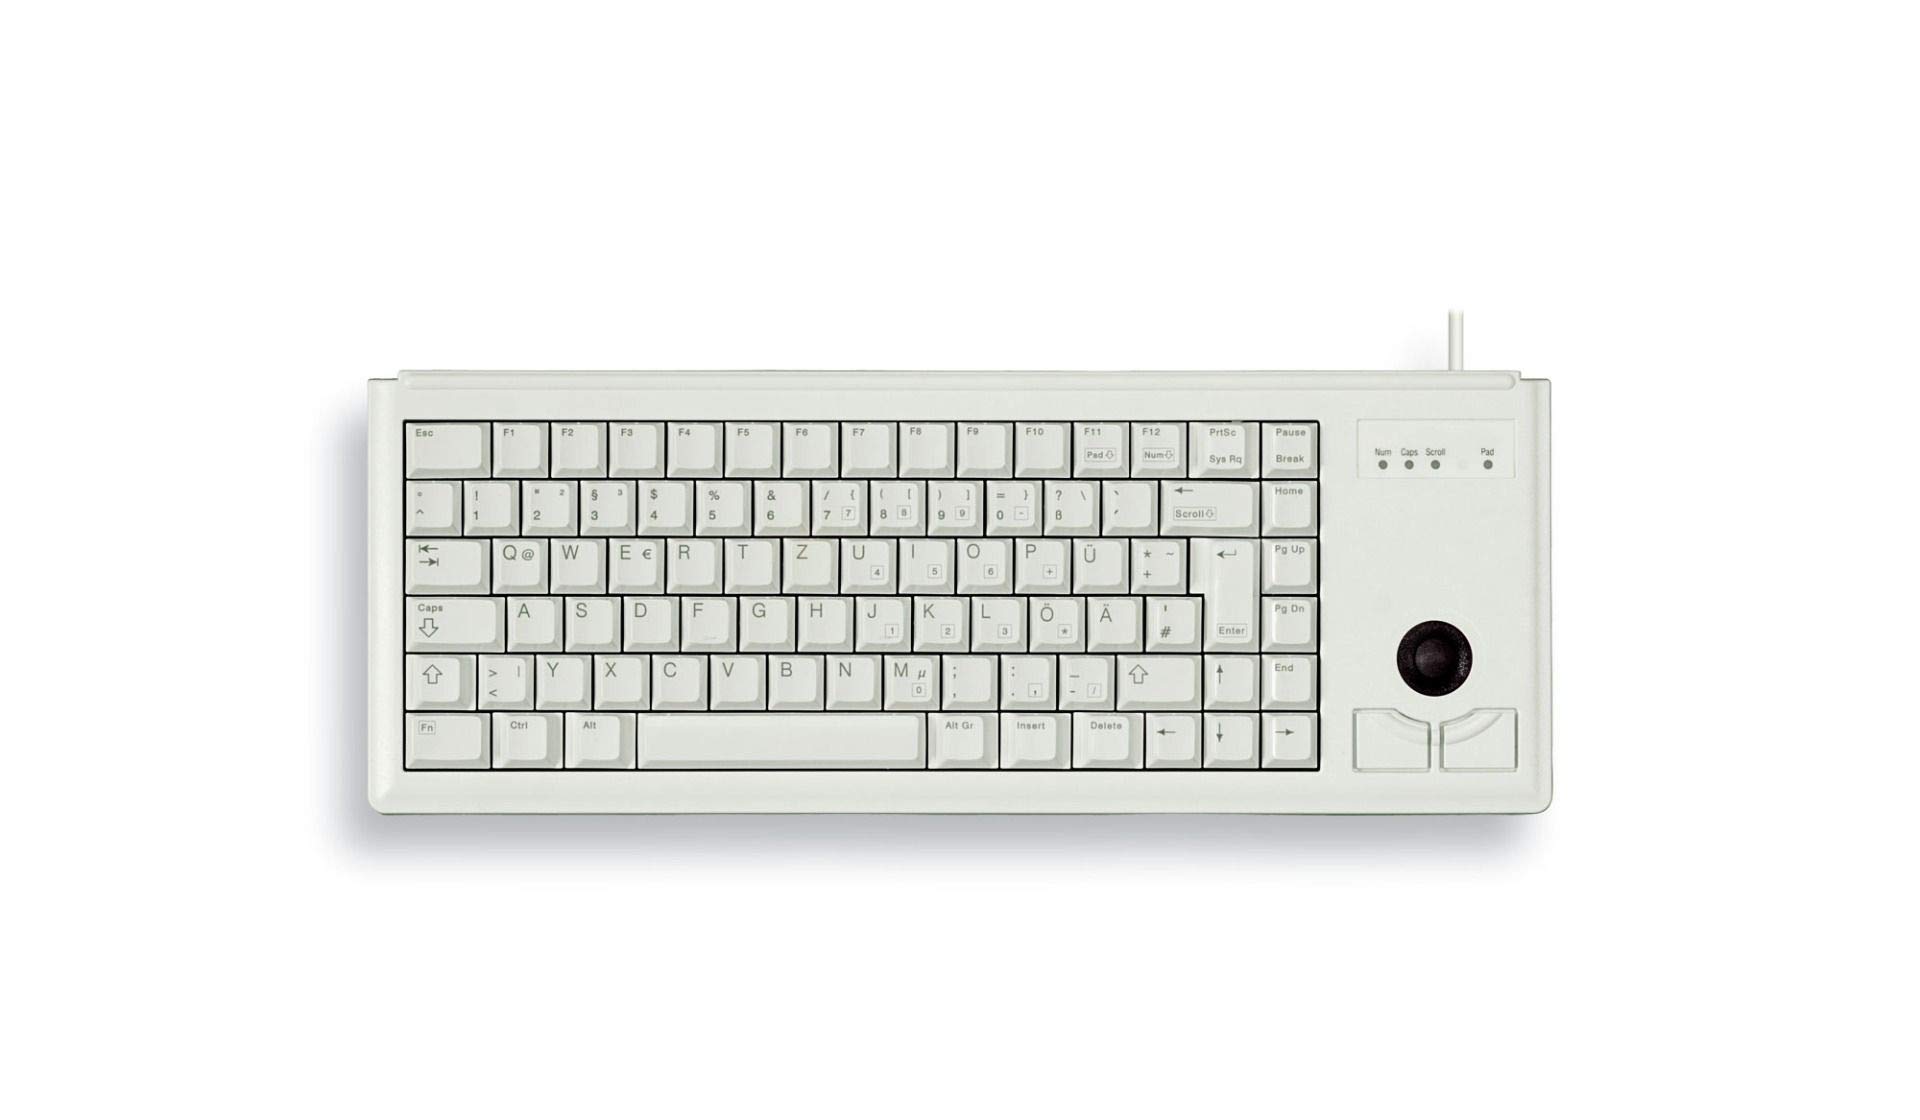 CHERRY Compact-Keyboard G84-4400, Deutsches Layout, QWERTZ Tastatur, kabelgebundene Tastatur, mechanische Tastatur, ML Mechanik, Integrierter optischer Trackball plus 2 Maustasten, hellgrau